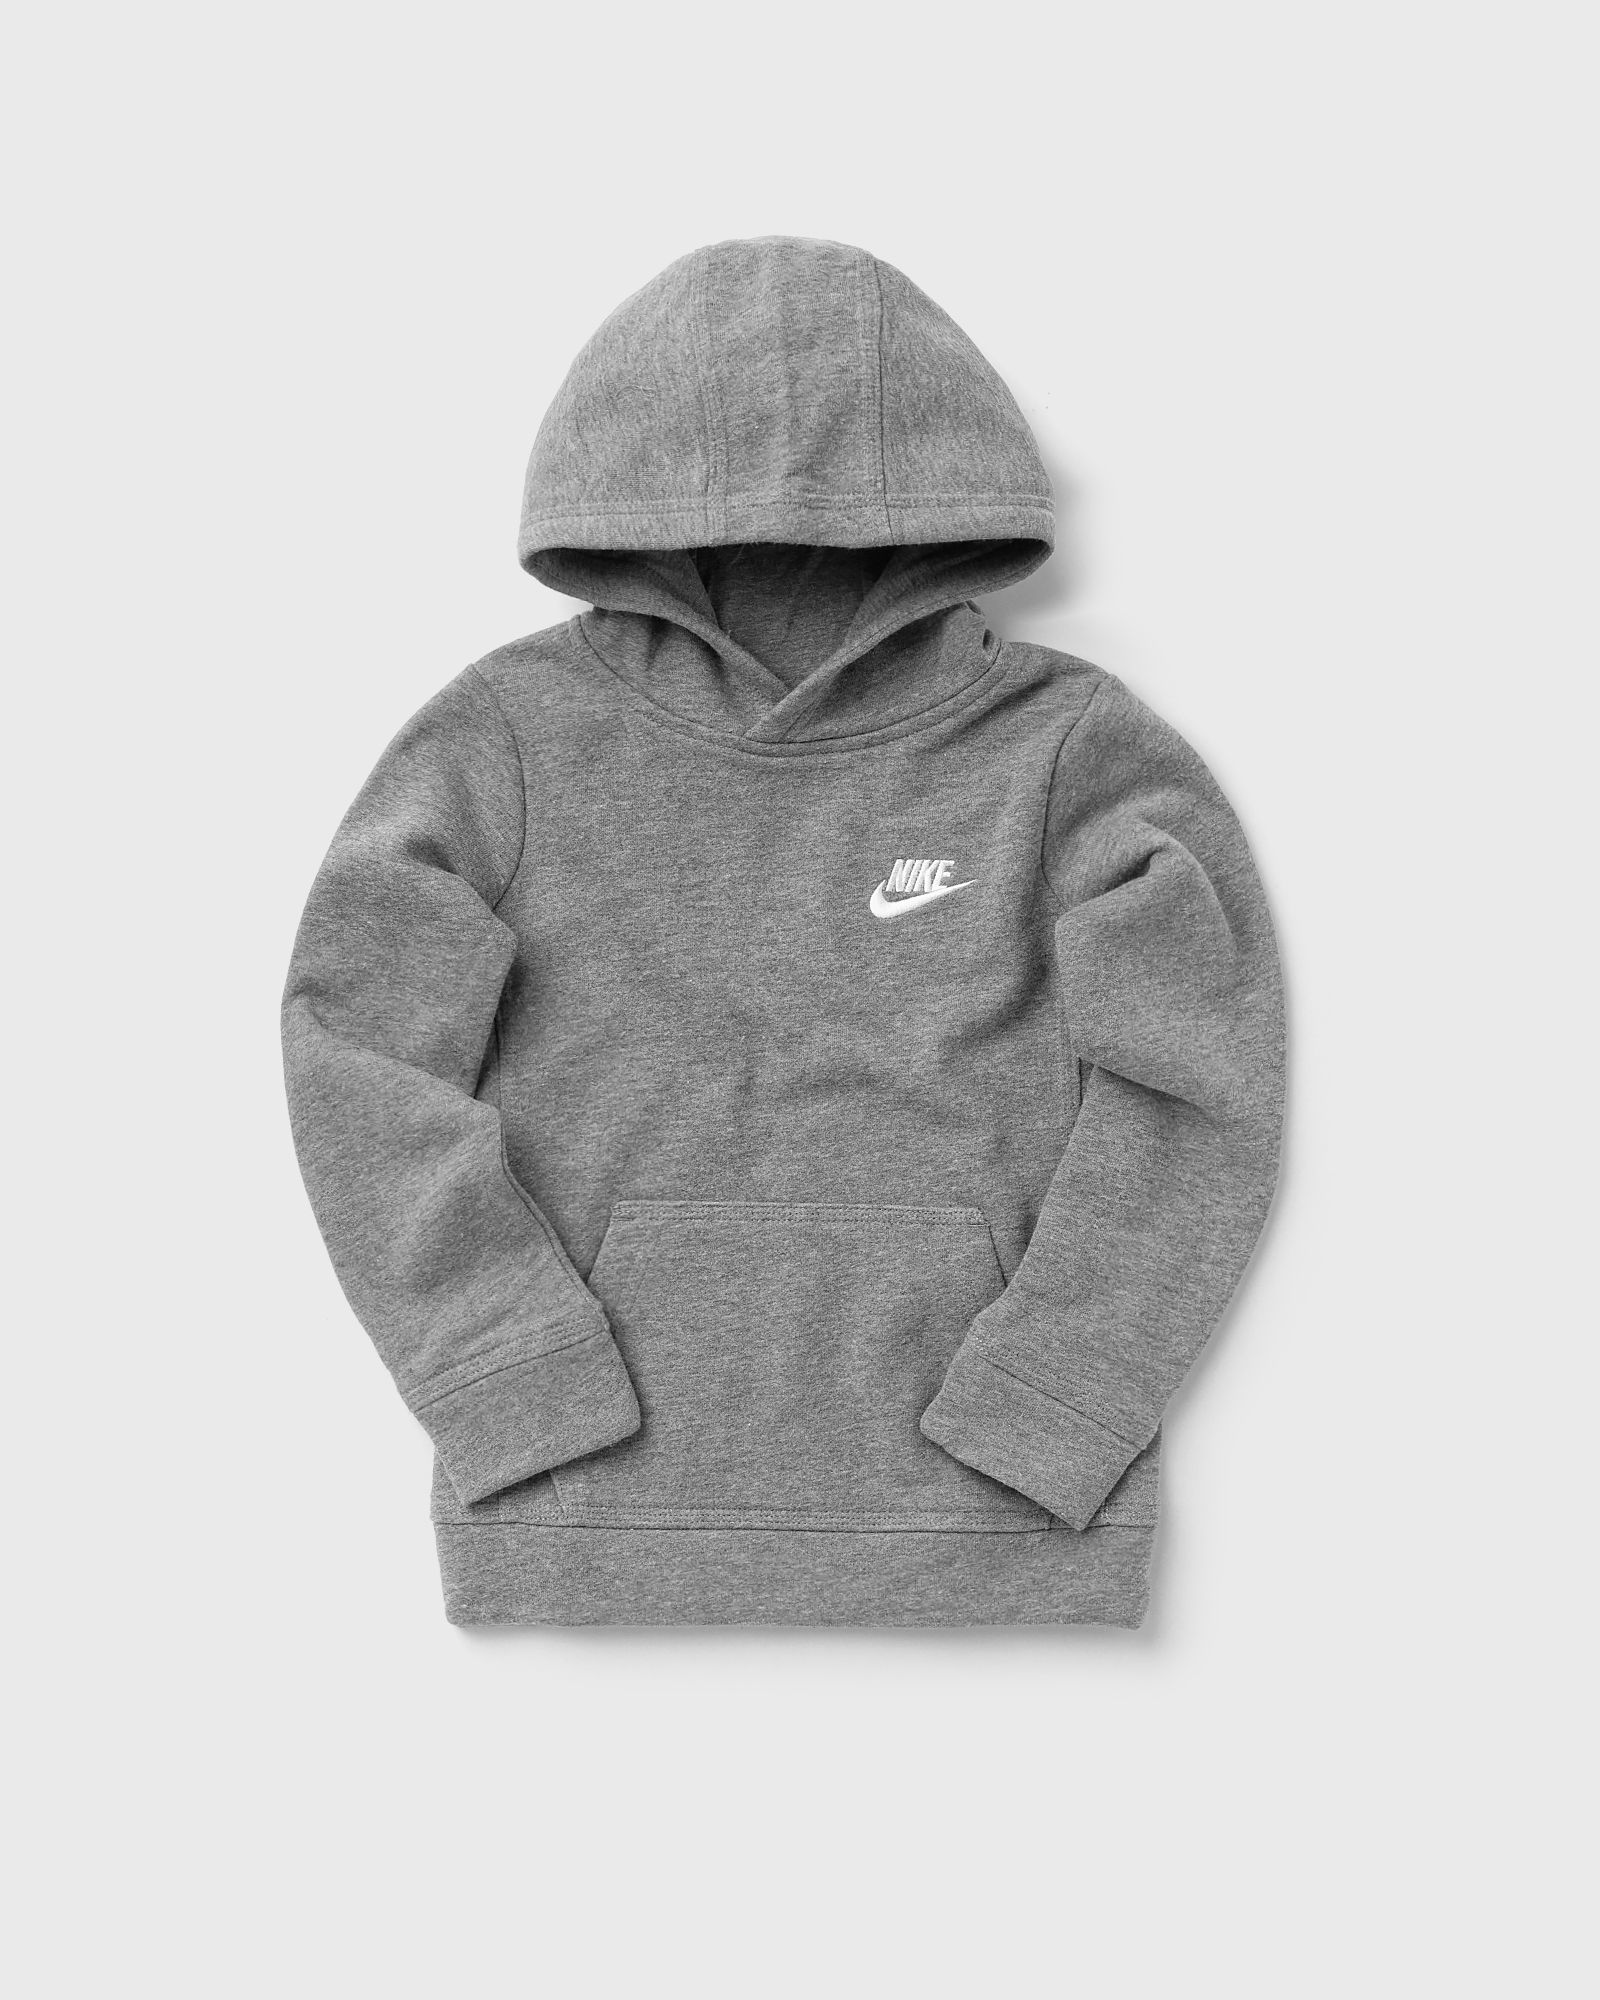 Nike - club fleece po hoodie  hoodies grey in größe:age 6-8 | eu 116-128